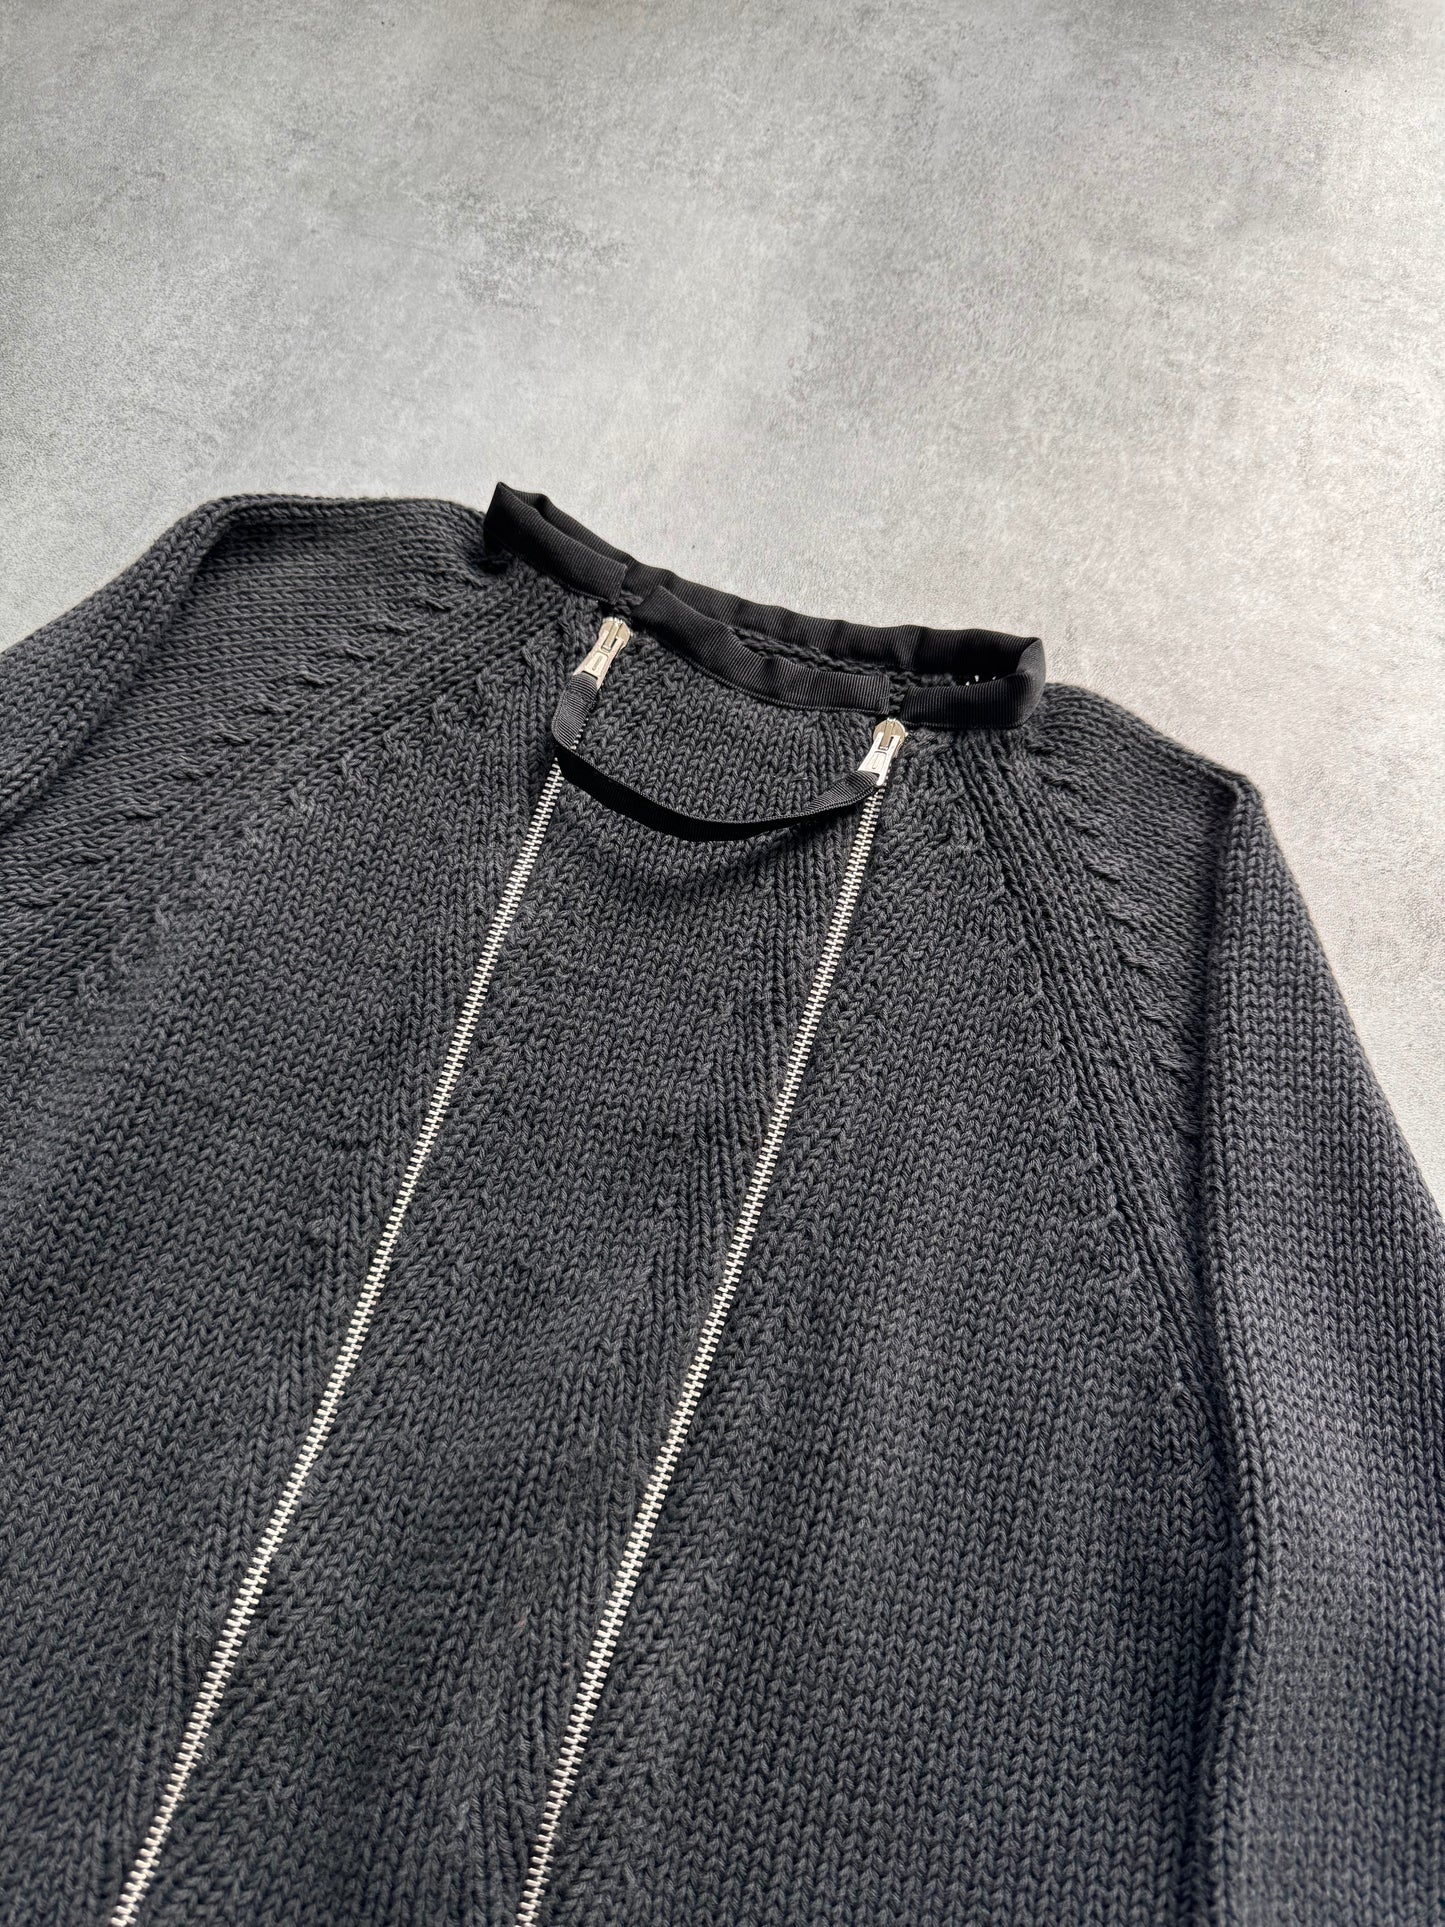 2000s Moschino Double Zip Sweater (S)